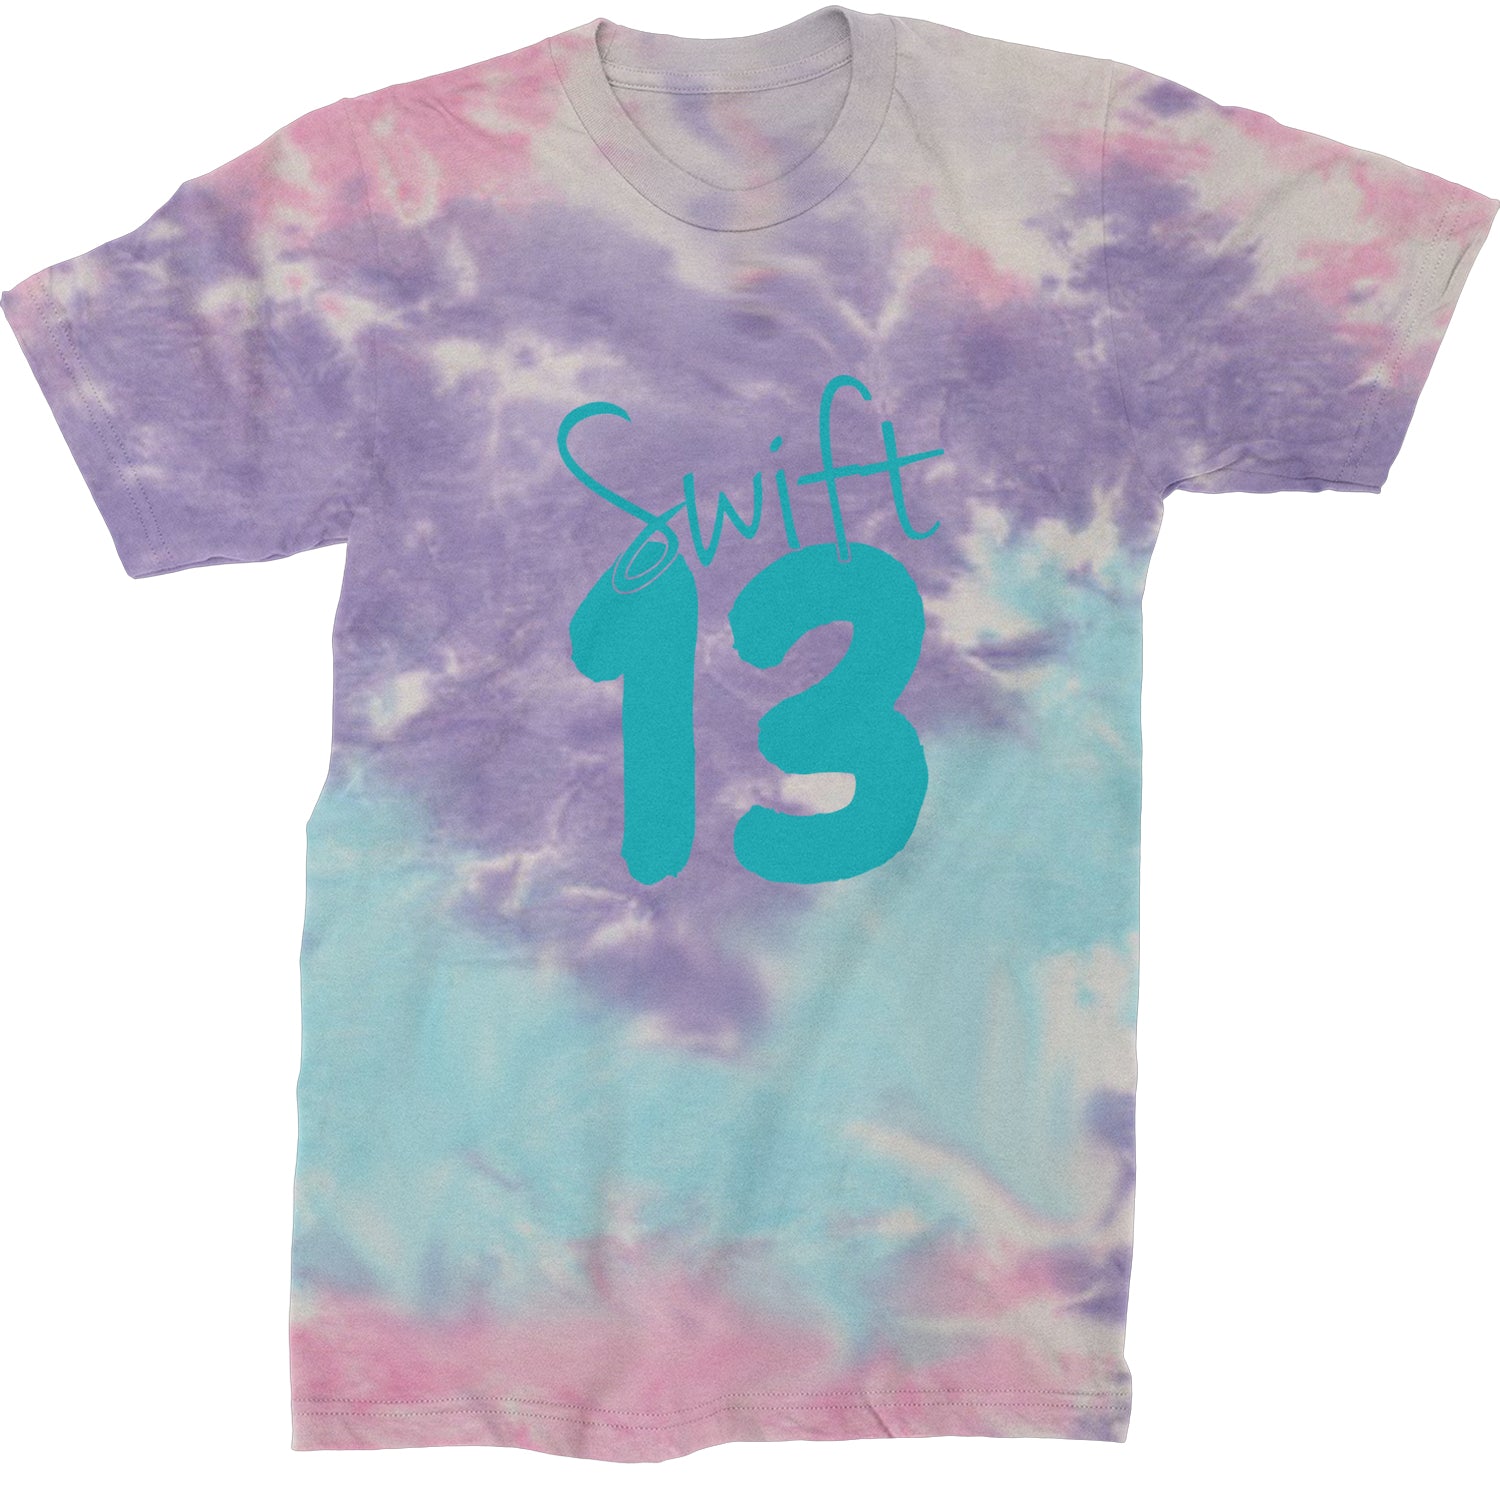 13 Swift 13 Lucky Number Era TTPD Mens T-shirt Tie-Dye Cotton Candy